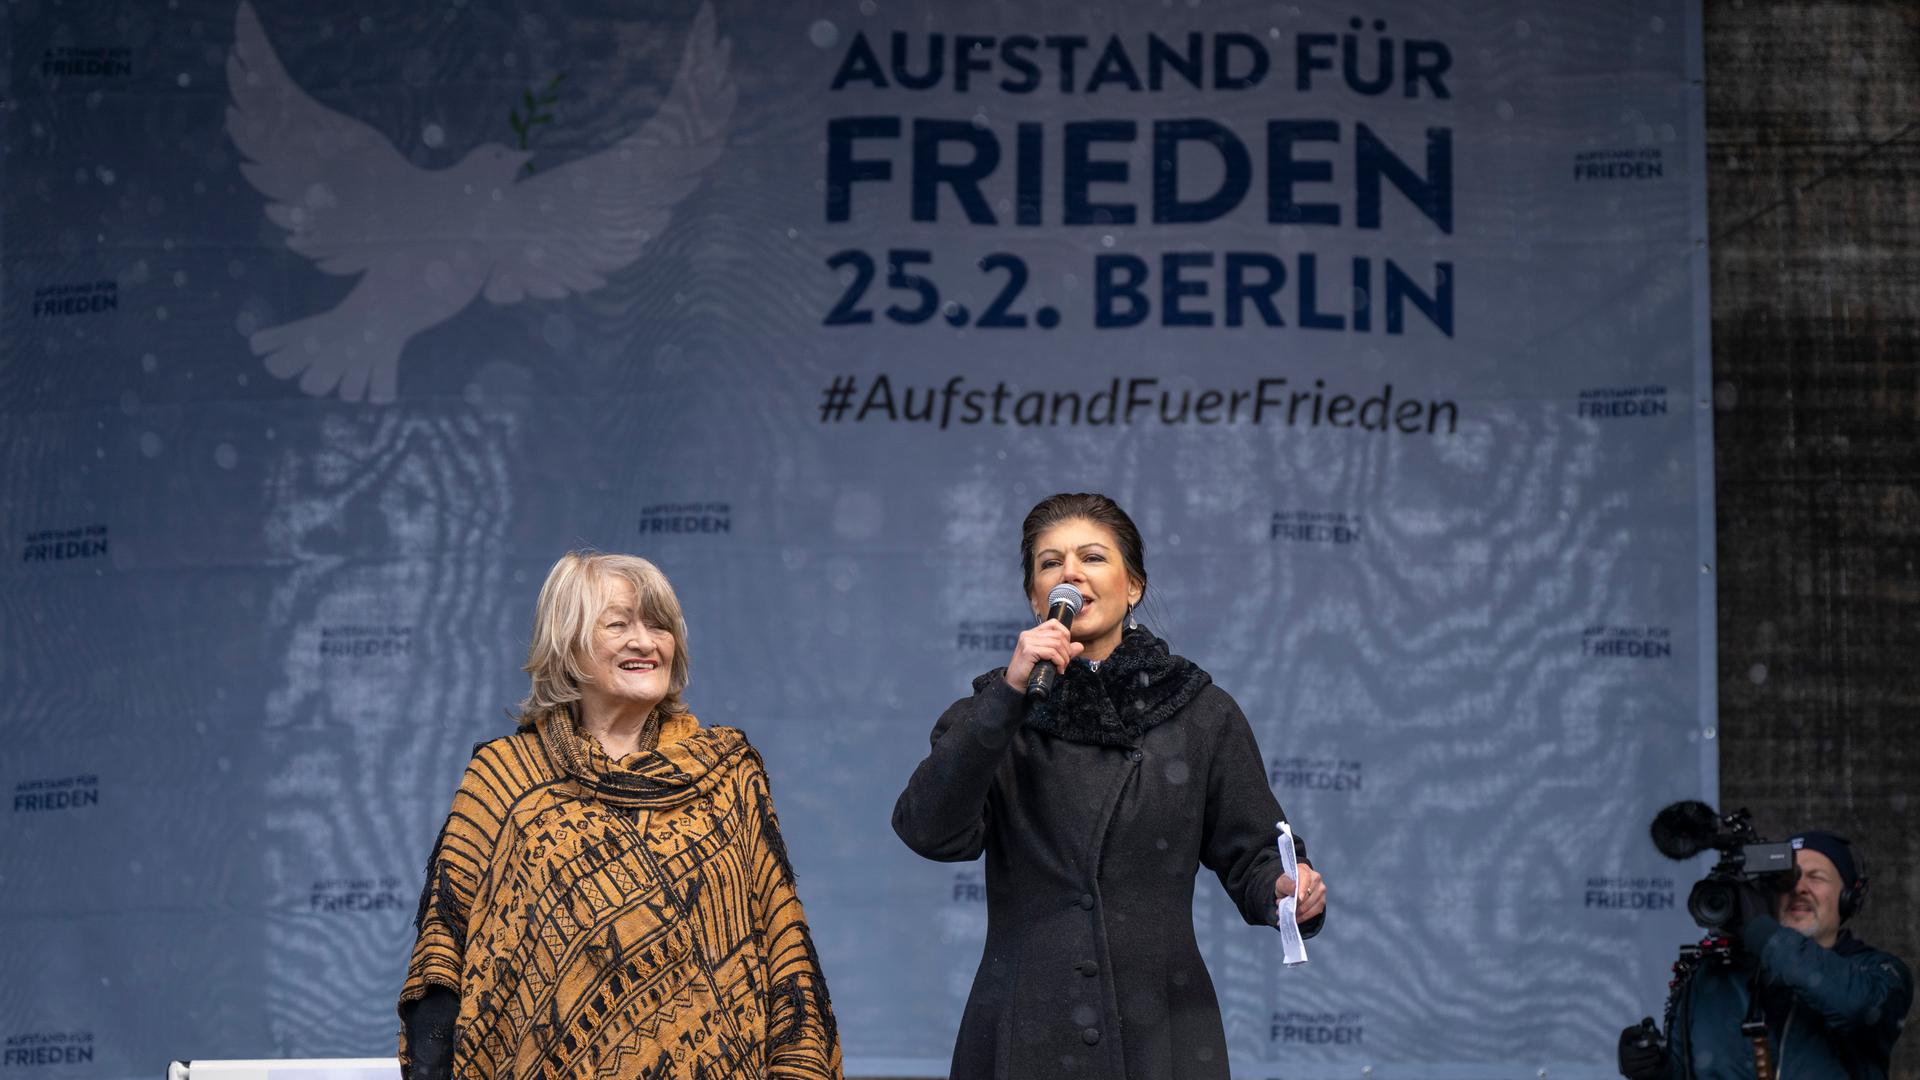 Alice Schwarzer und Sarah Wagenknecht reden bei der Demo "Aufstand für den Frieden" in Berlin.